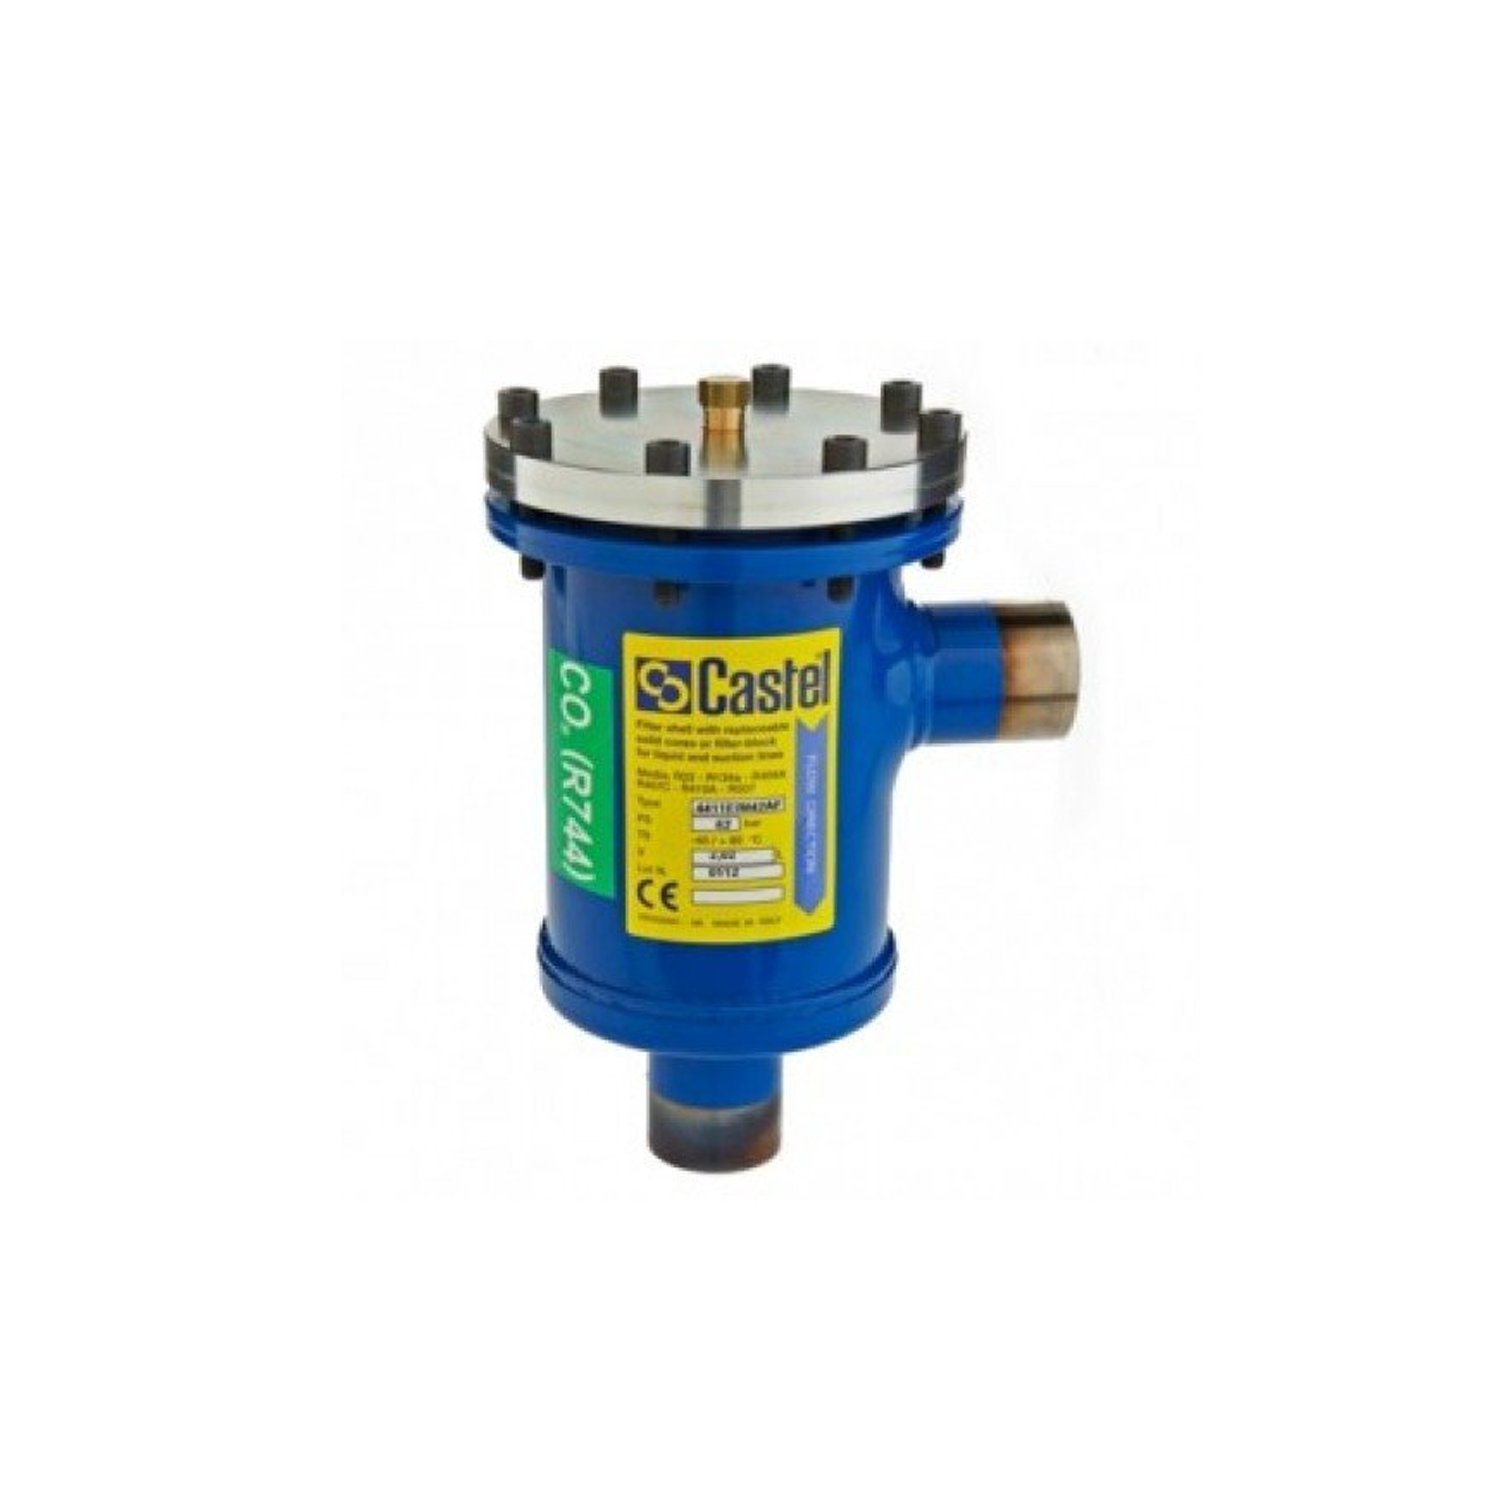 Filtertrockner CASTEL 4411/M28A 44-1, 008308